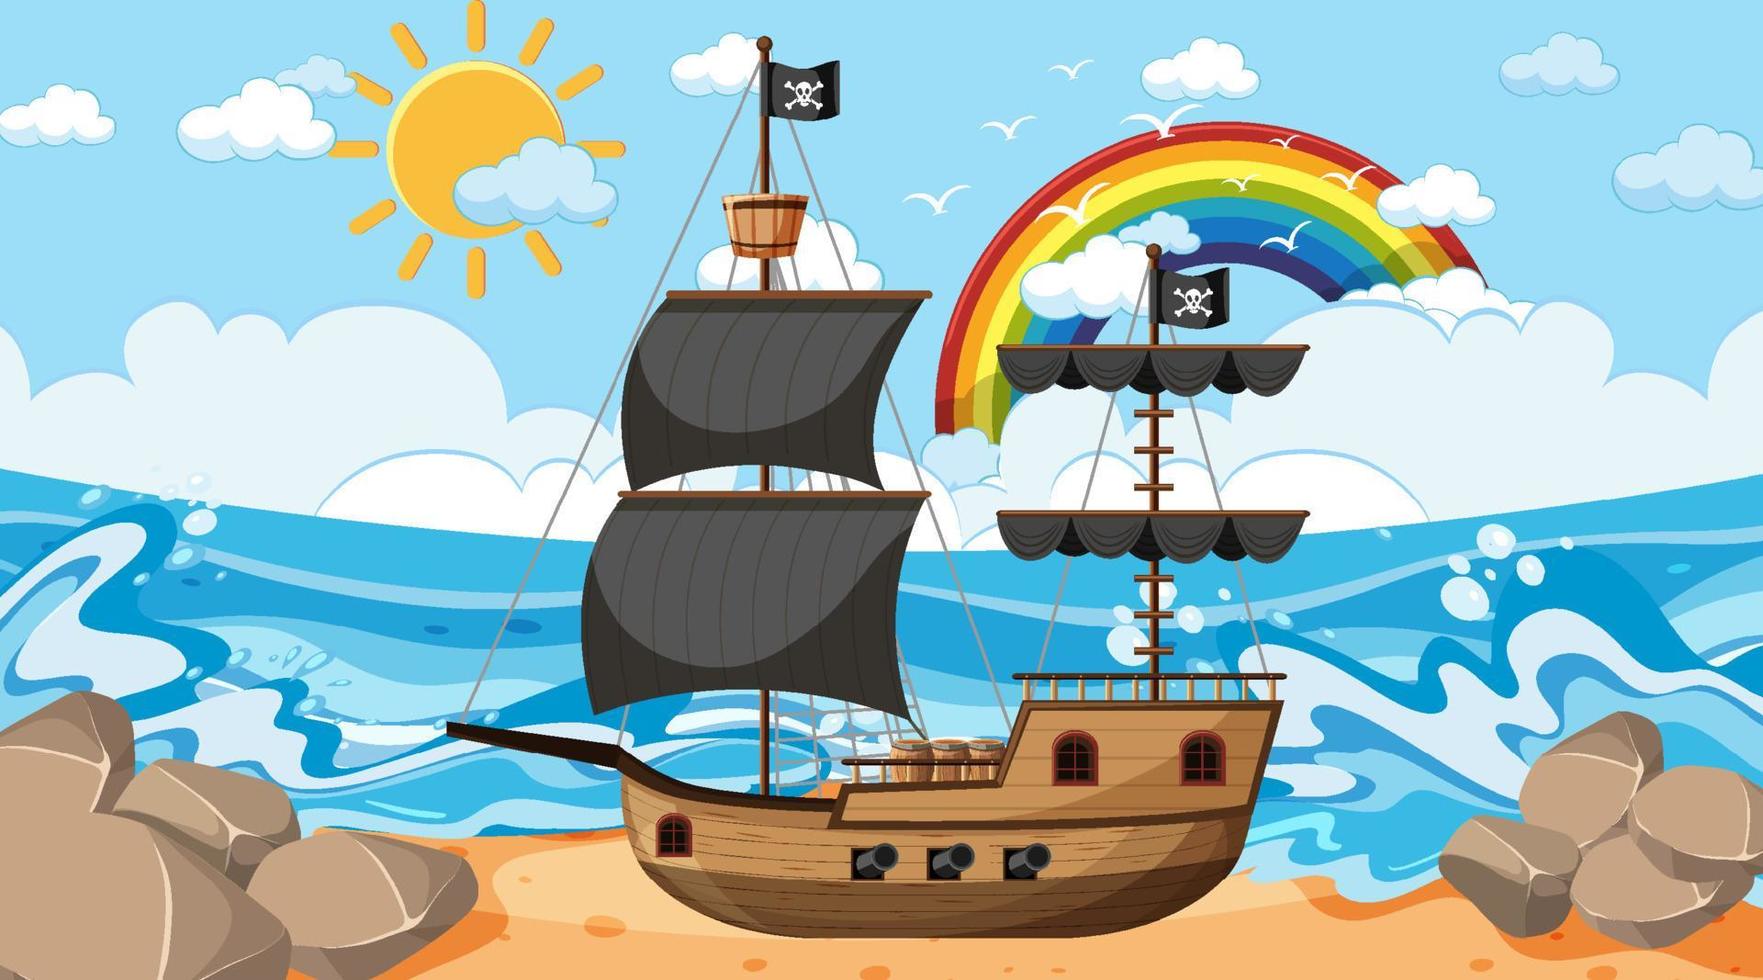 océano con barco pirata en la escena diurna en estilo de dibujos animados vector